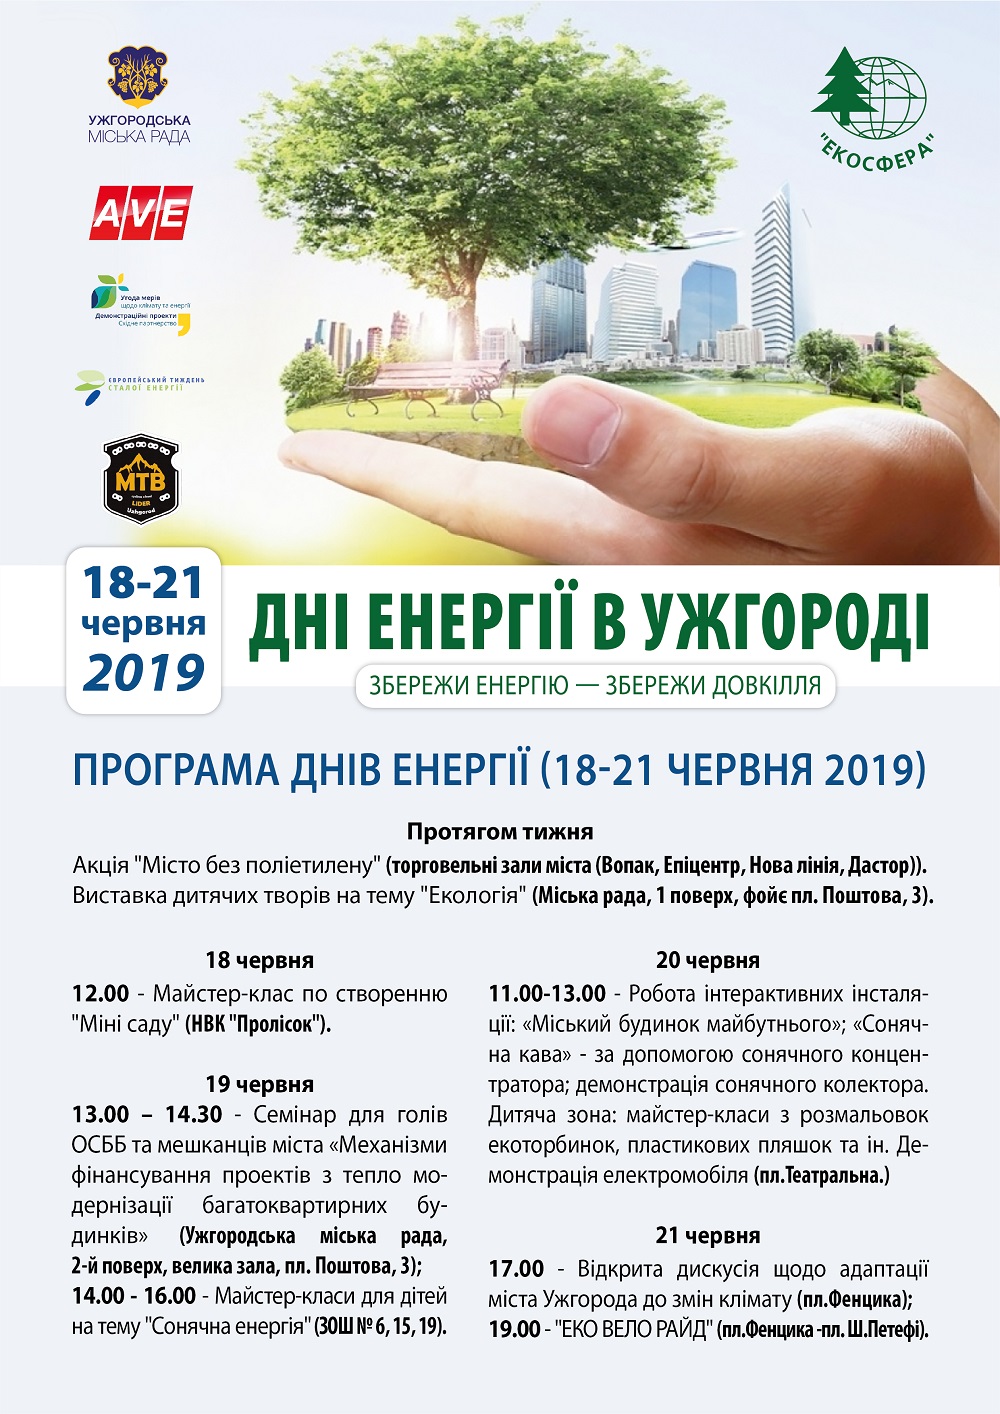 Дні енергії проходитимуть в Ужгороді з 18 до 21 червня